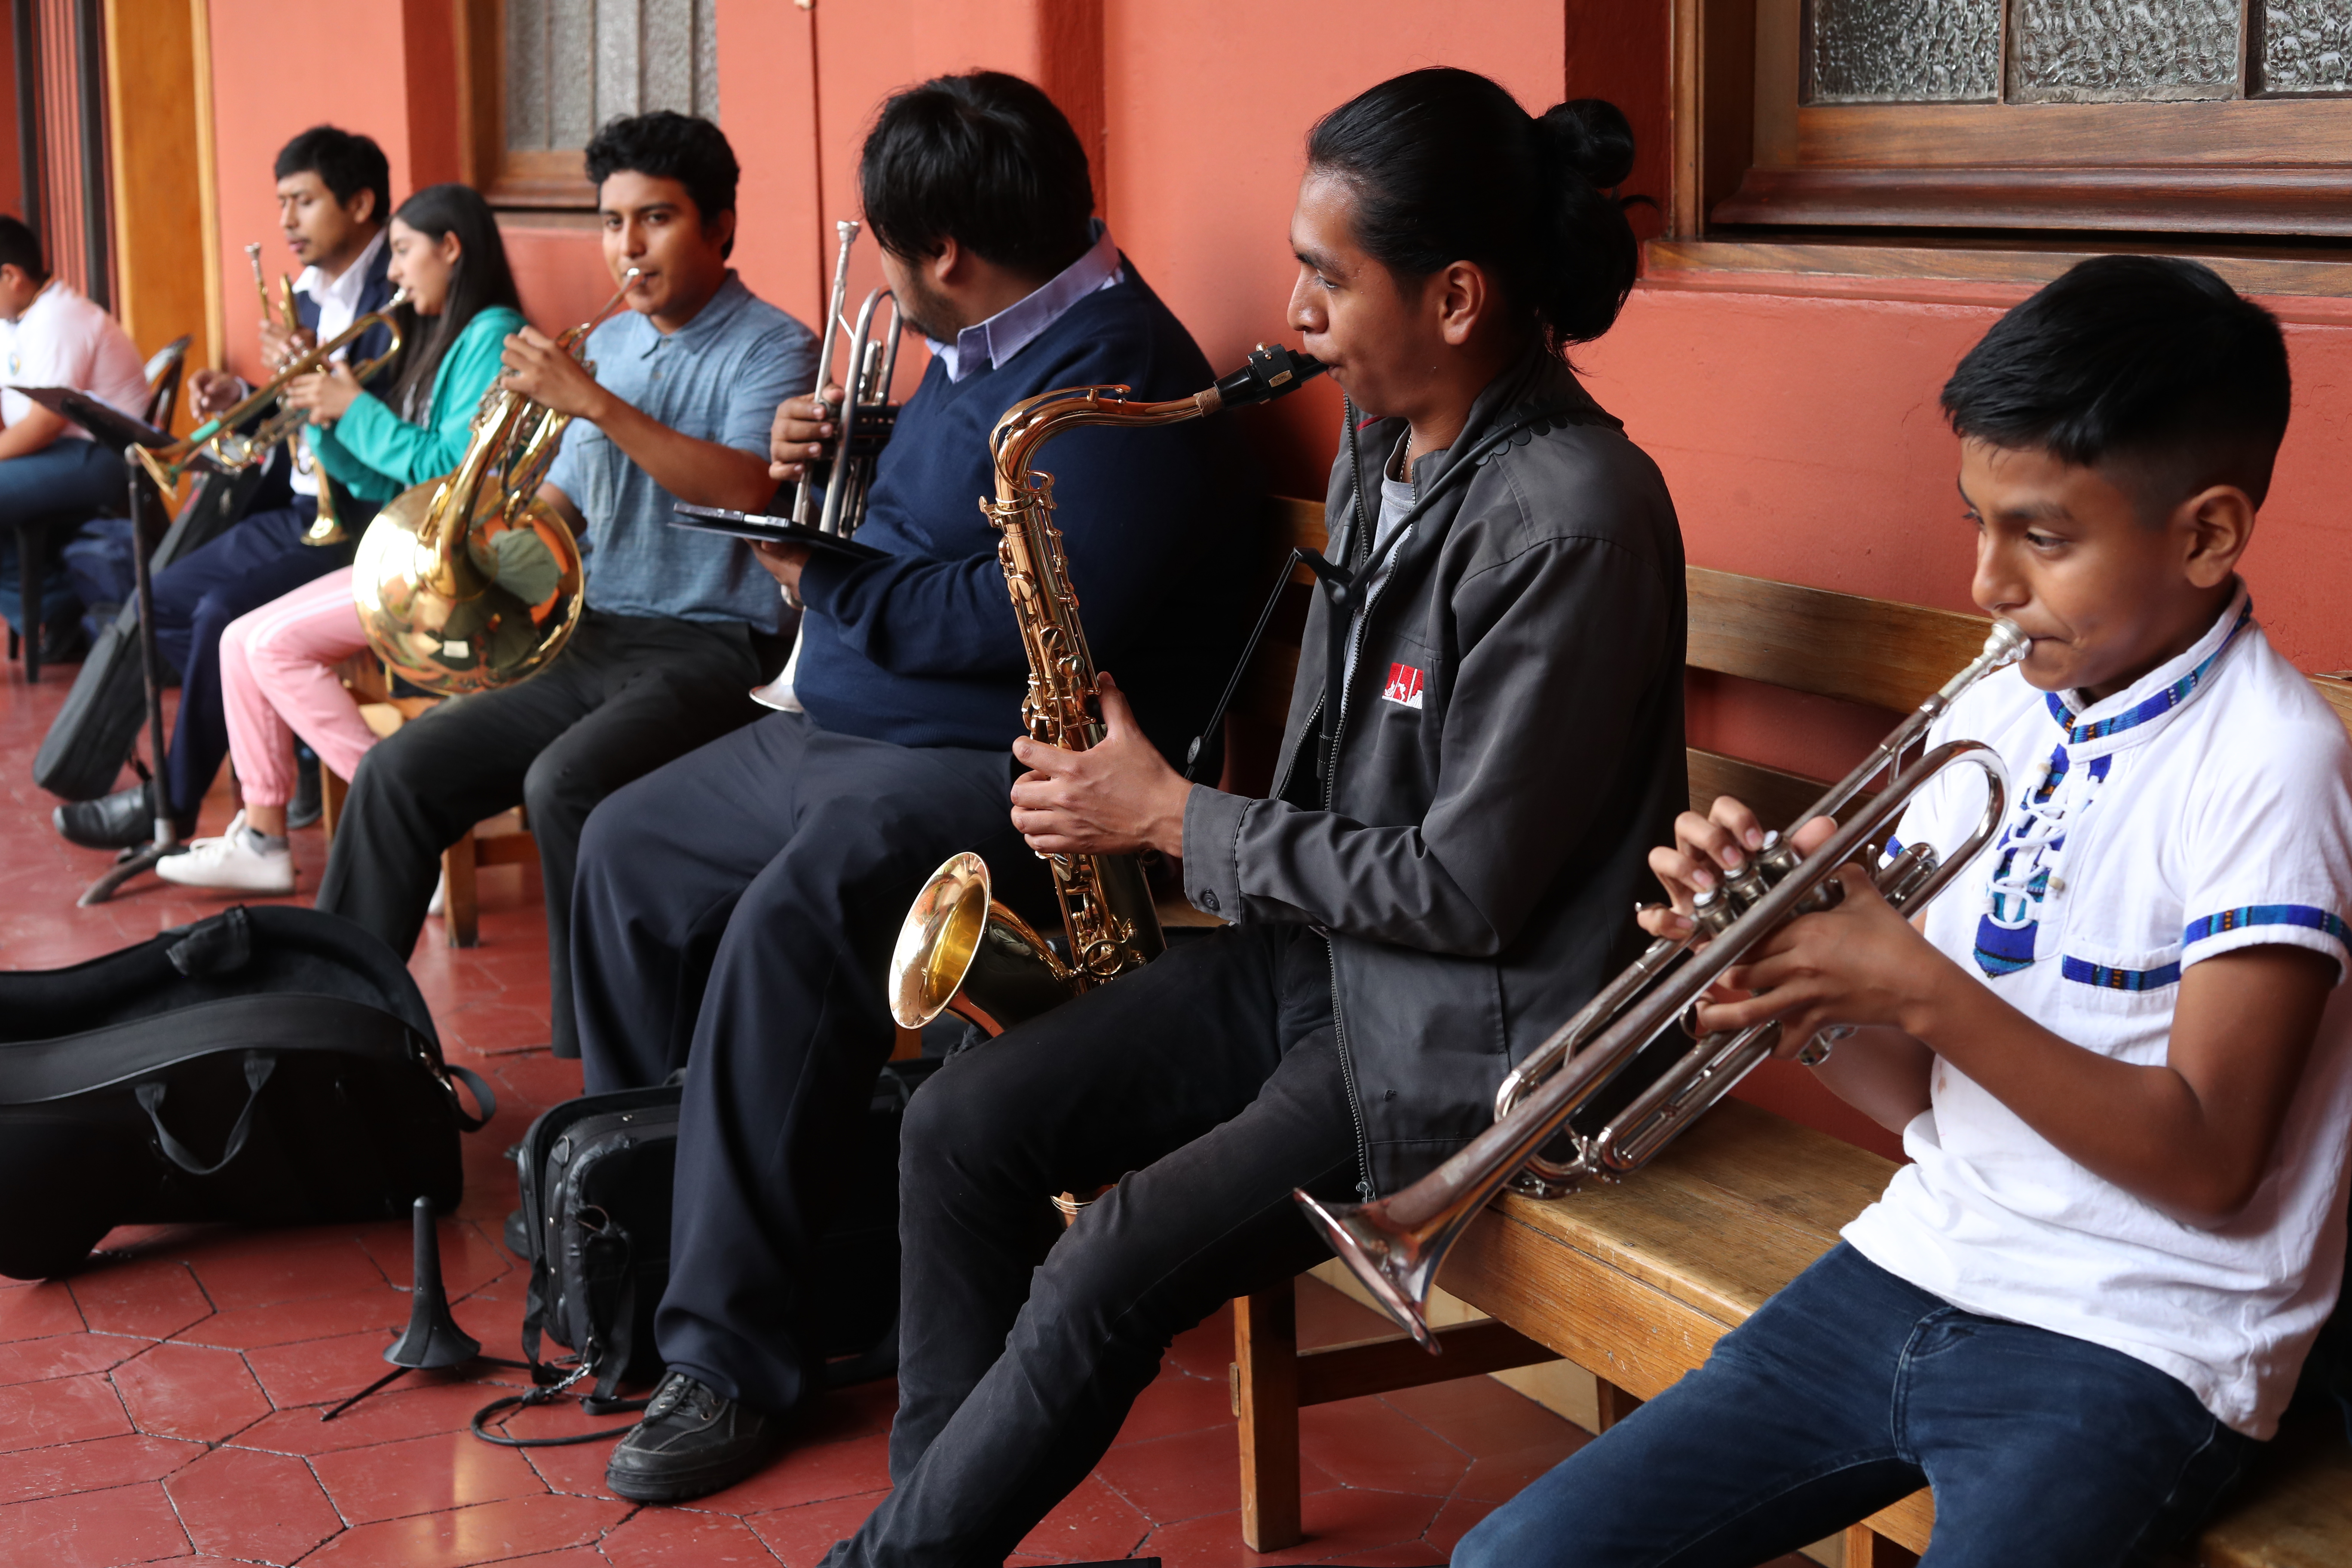 Los desafíos por conseguir el sueño de ser músico en Guatemala